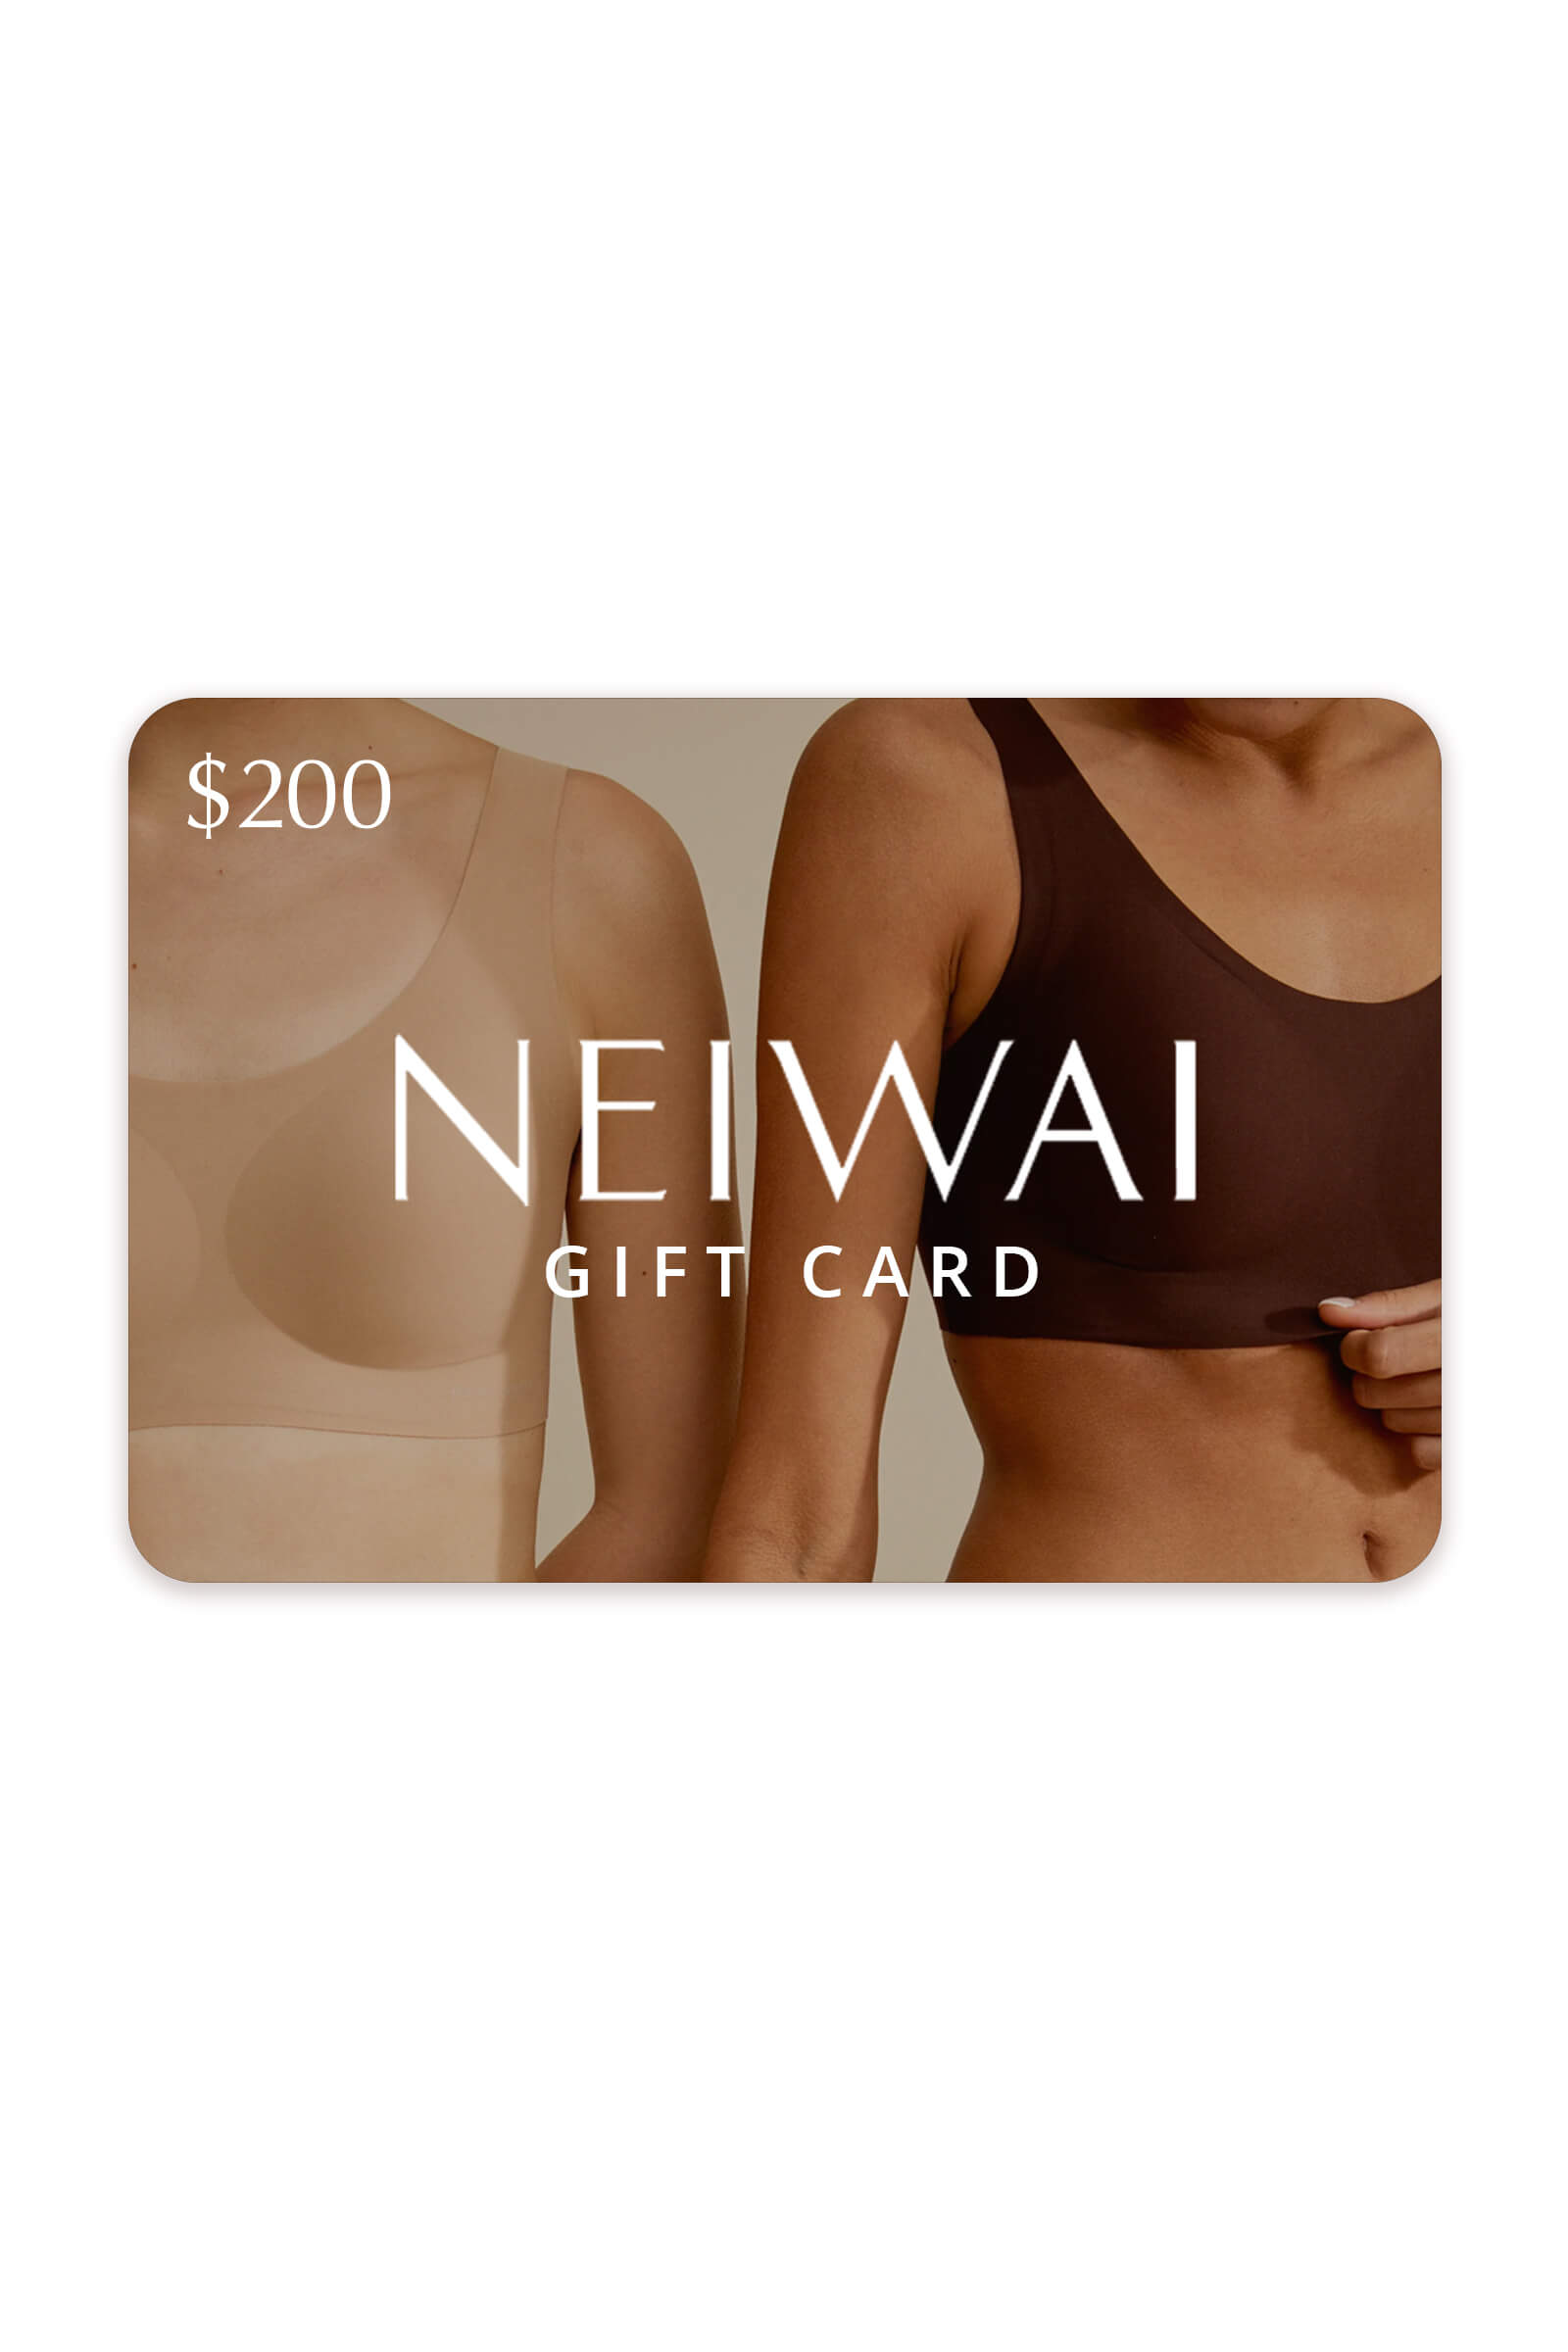 NEIWAI gift card $200